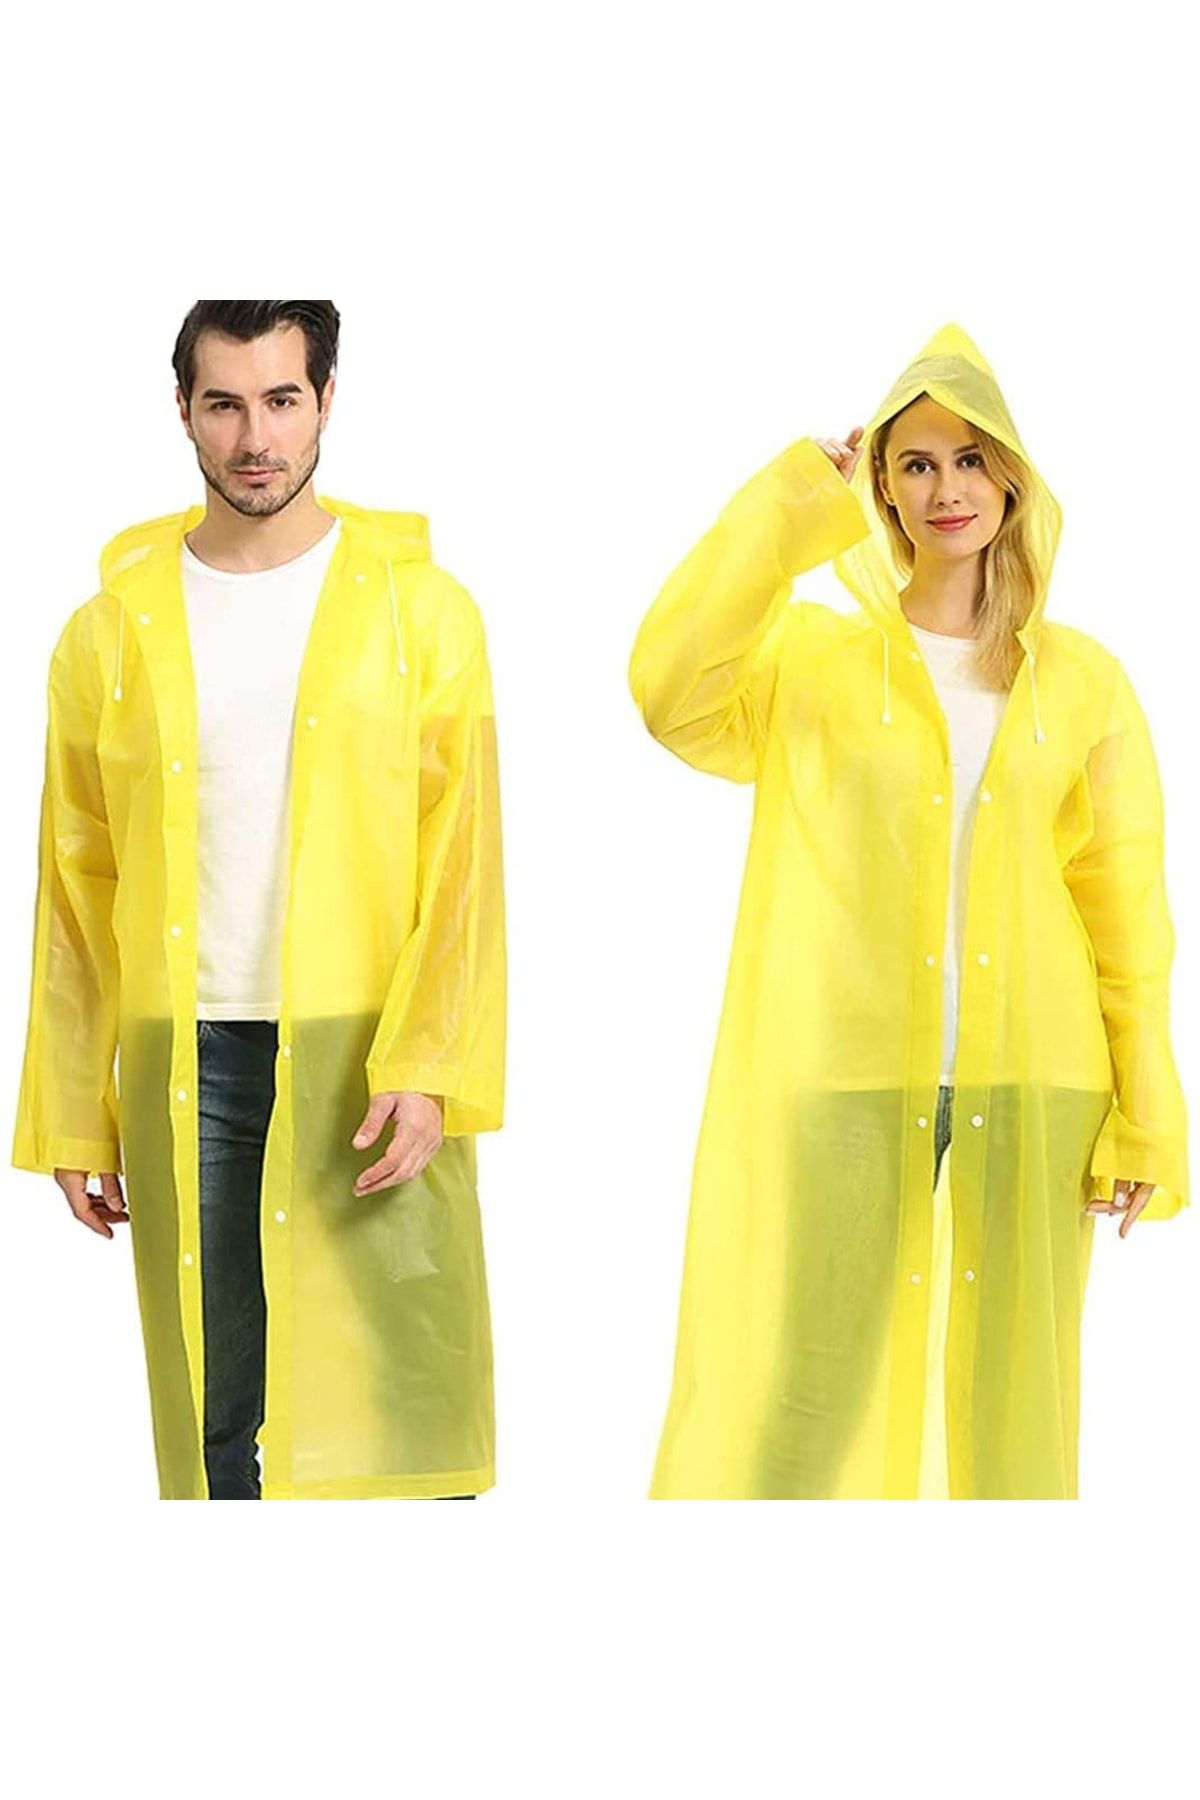 eleven market Marlux Unisex Eva Yağmurluk Sarı Spor Yağmurluk Mrc-801